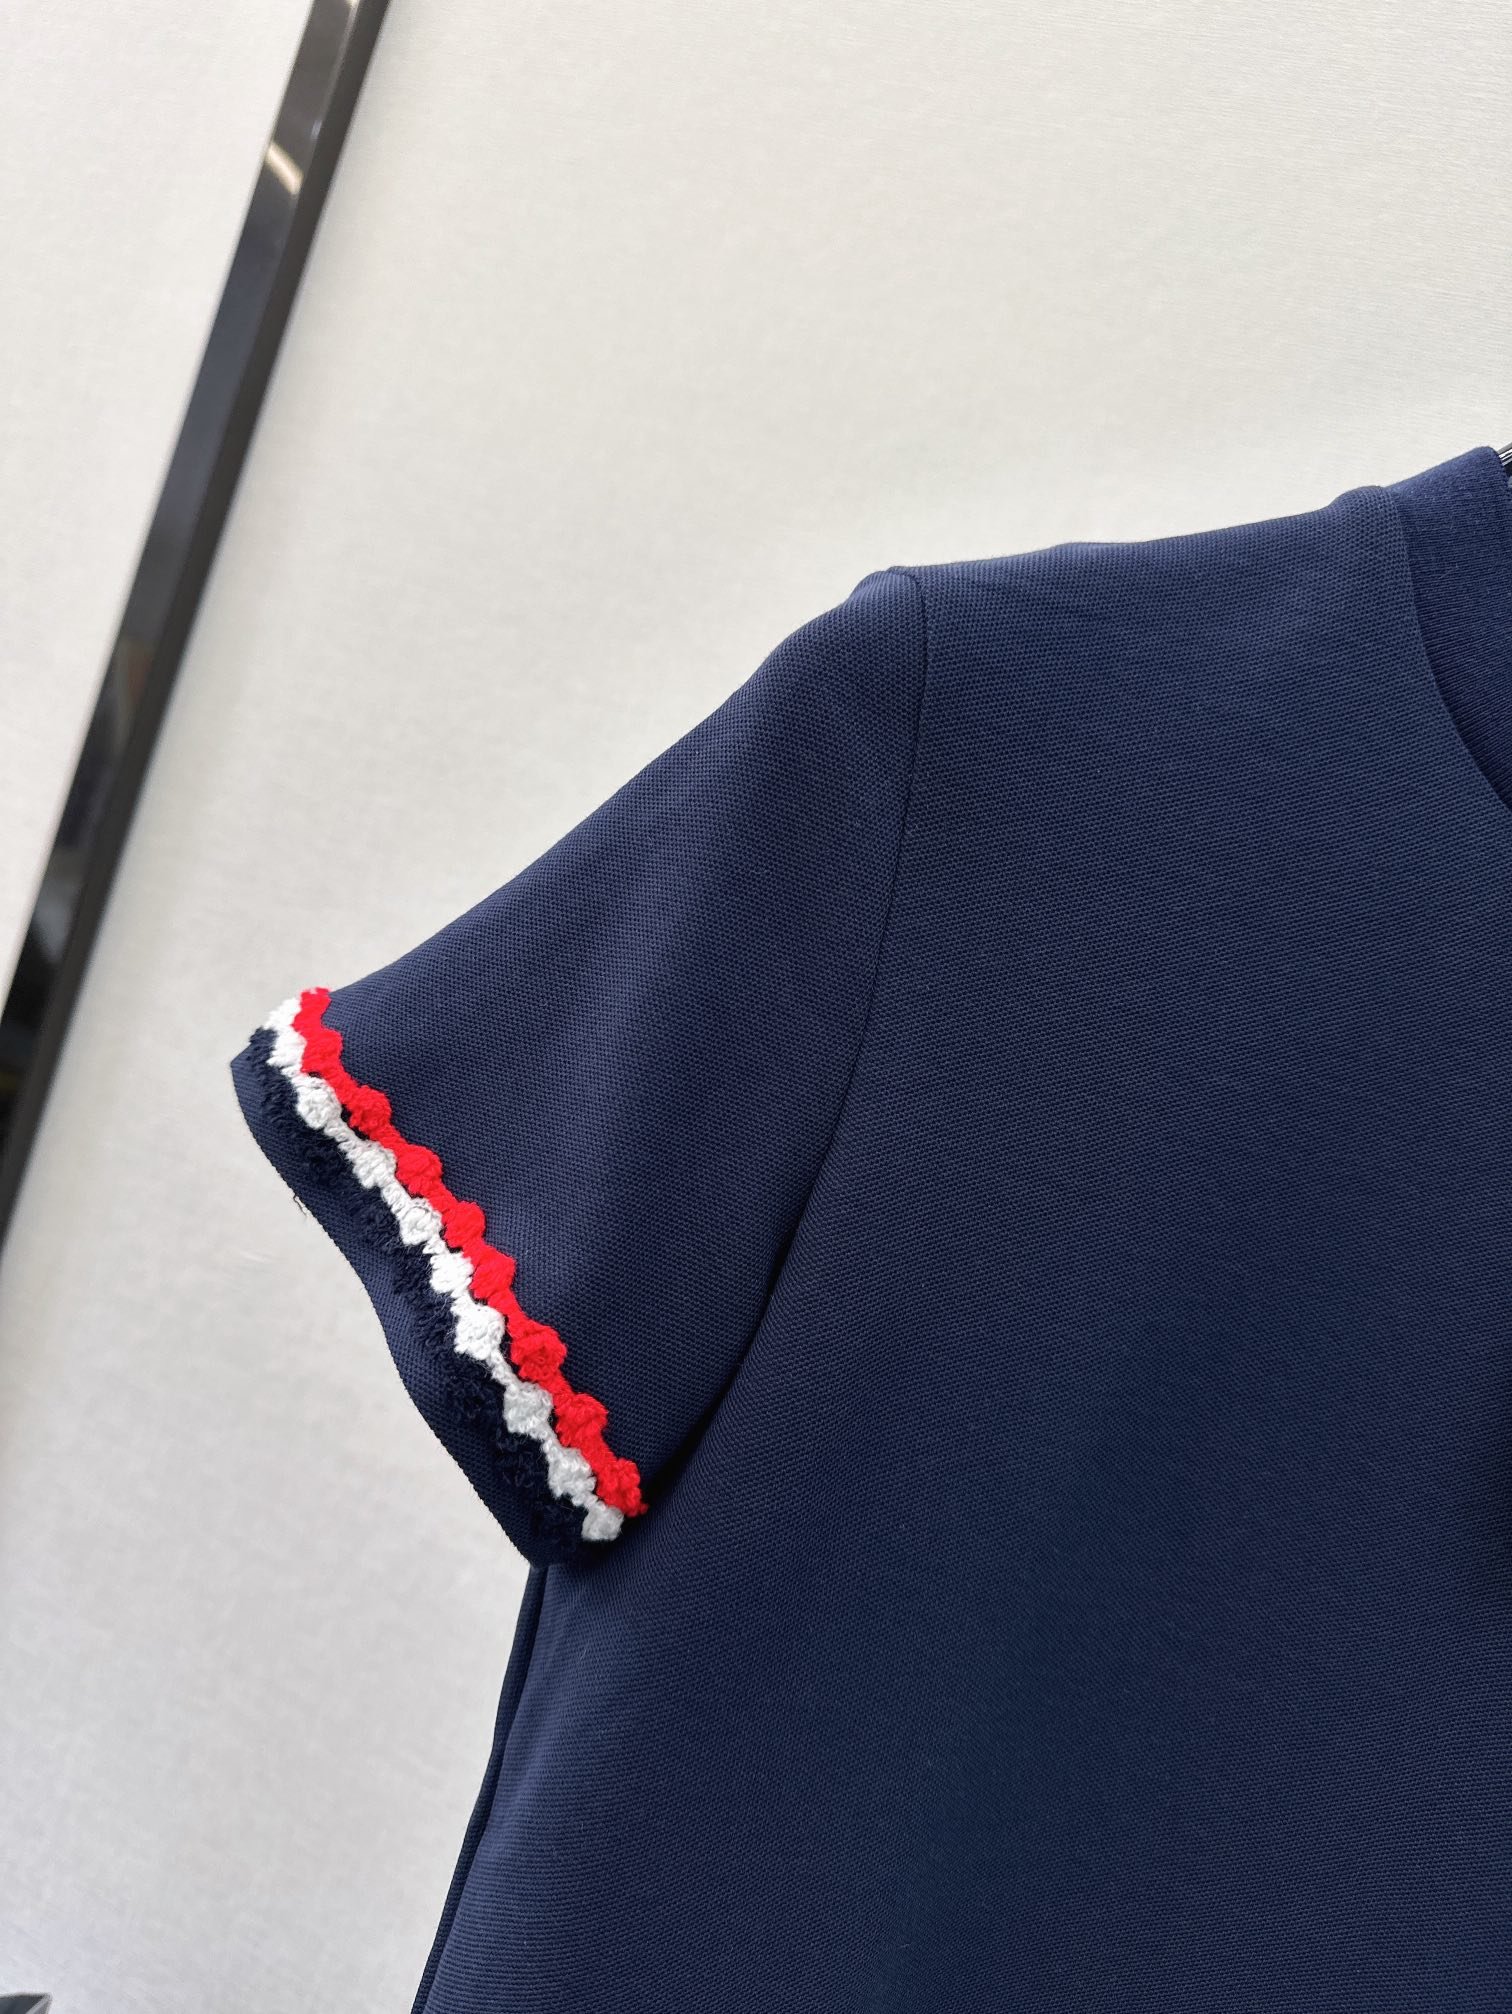 TB24Ss春夏最新款减龄学院风撞色织带设计短袖T恤原版定制螺纹全棉材质背后领口tb标低调高级上身减龄又